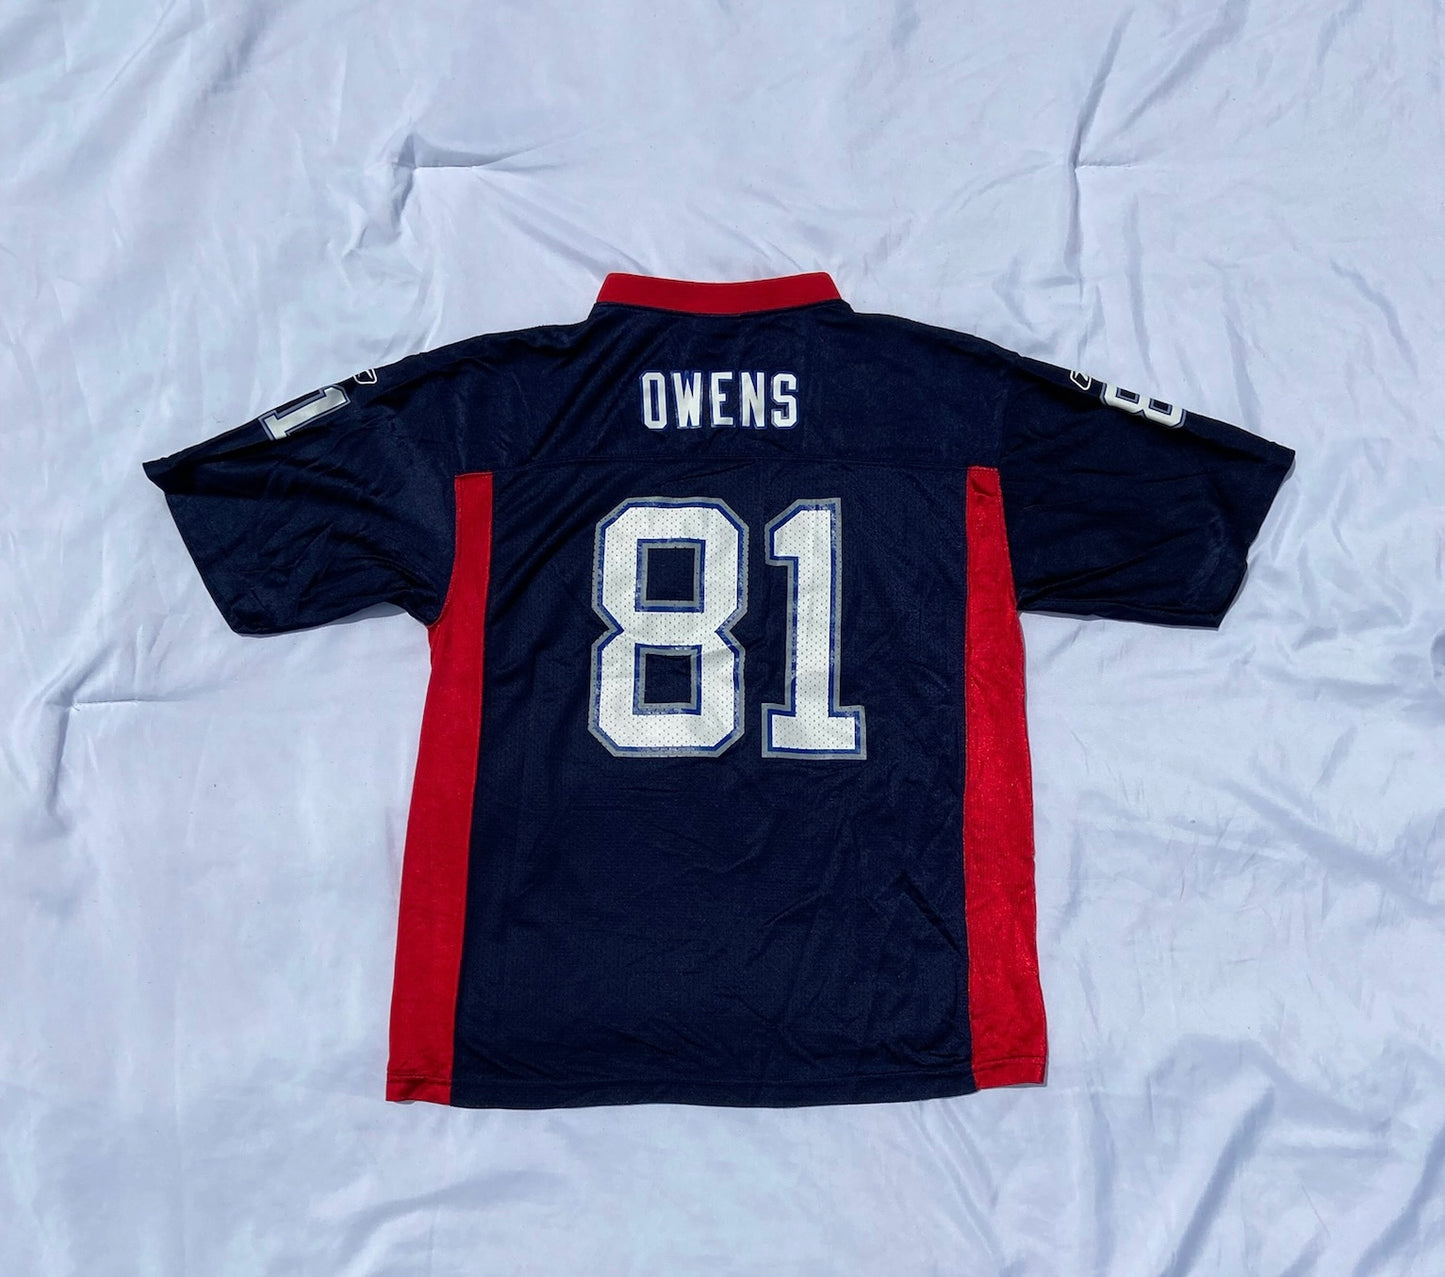 Bills Owens Jersey